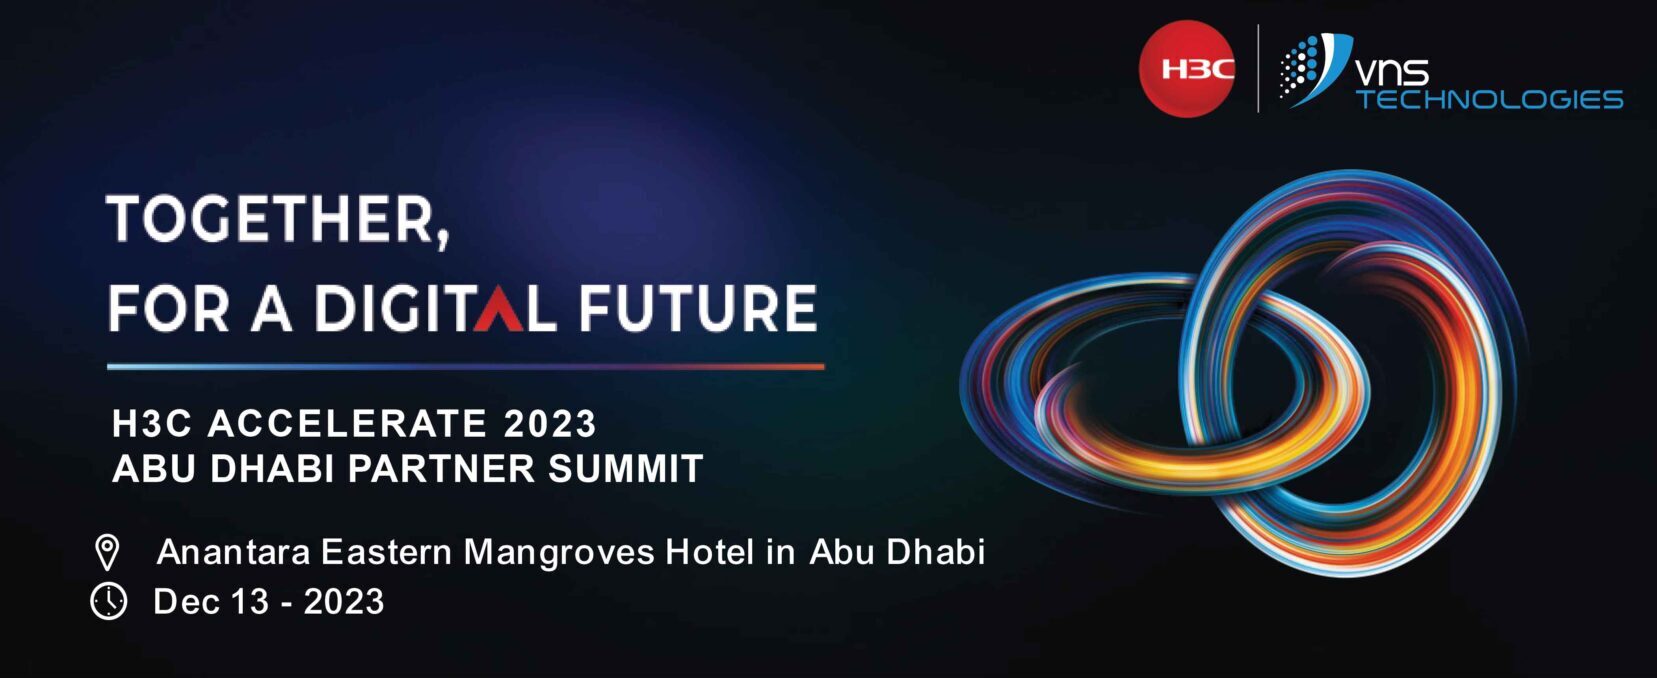 H3C-Event-Email-Invite-UAE-Partner-Summit-2023-1